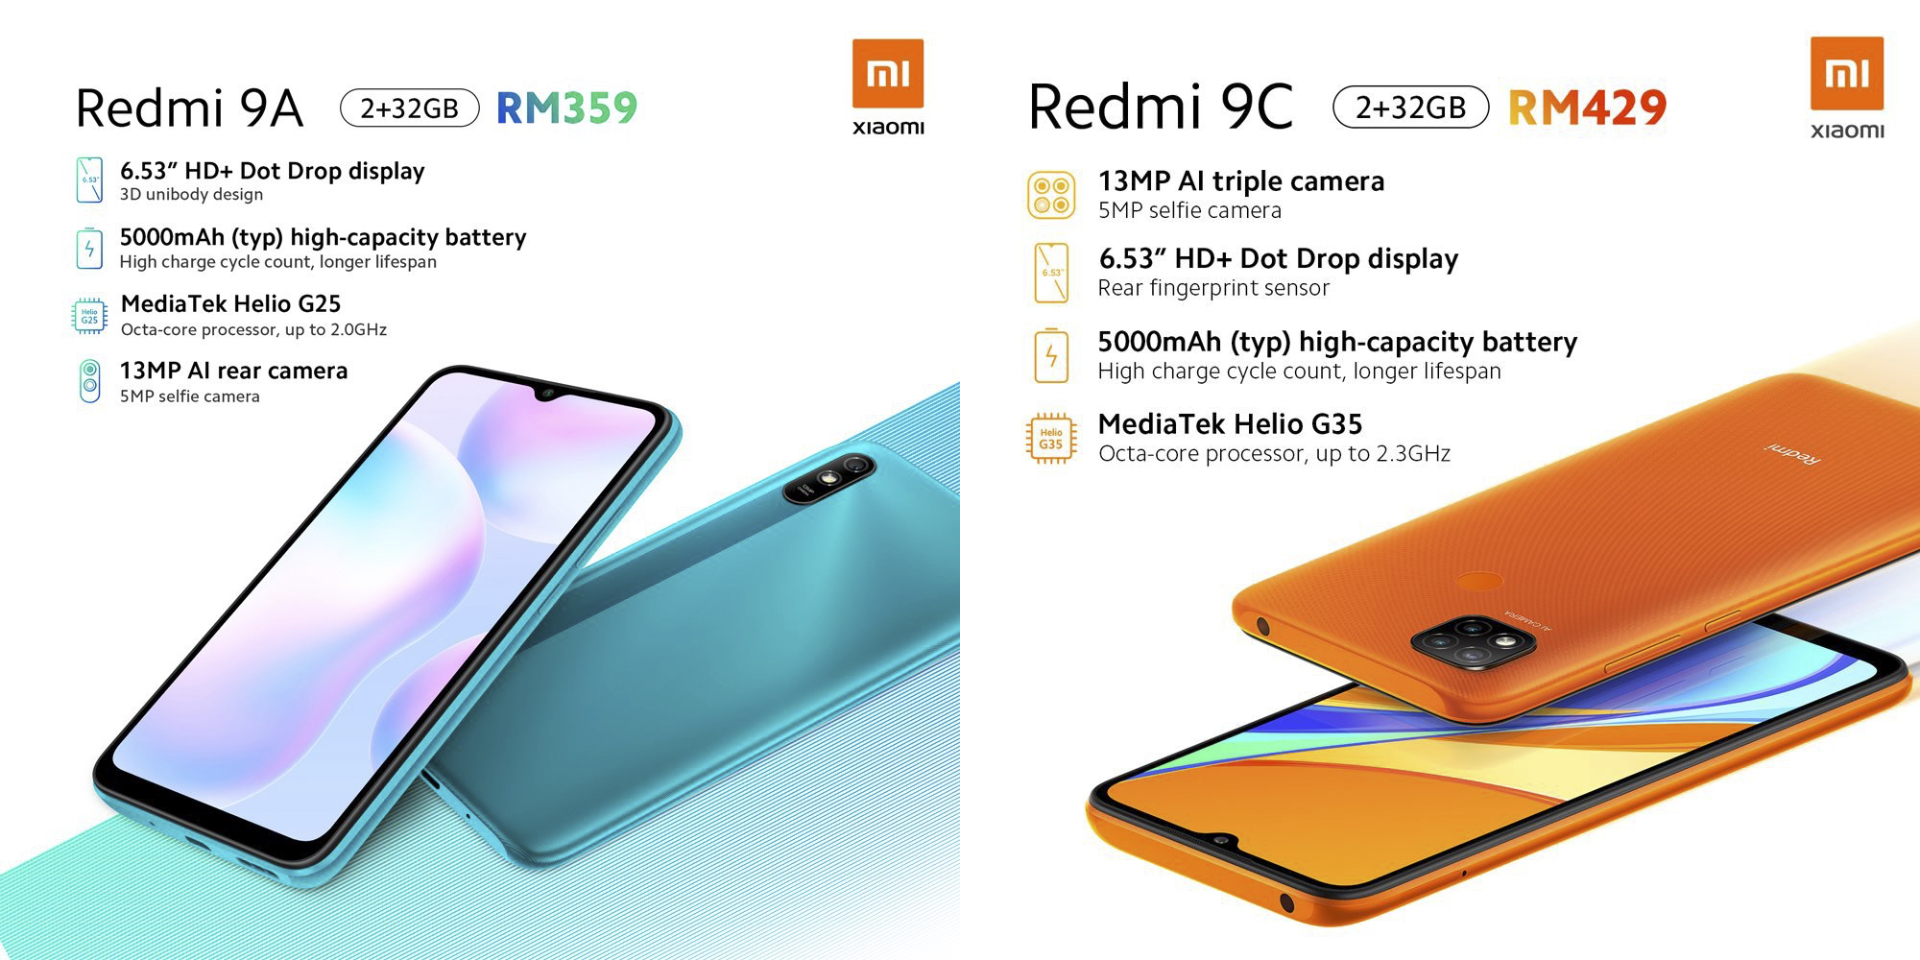 Телефон редми вылезает реклама. Смартфон Xiaomi Redmi 9c. Смартфон Xiaomi Redmi 9c 3/64gb. Redmi Note 9 32gb. Смартфон Xiaomi Redmi 9 64gb.